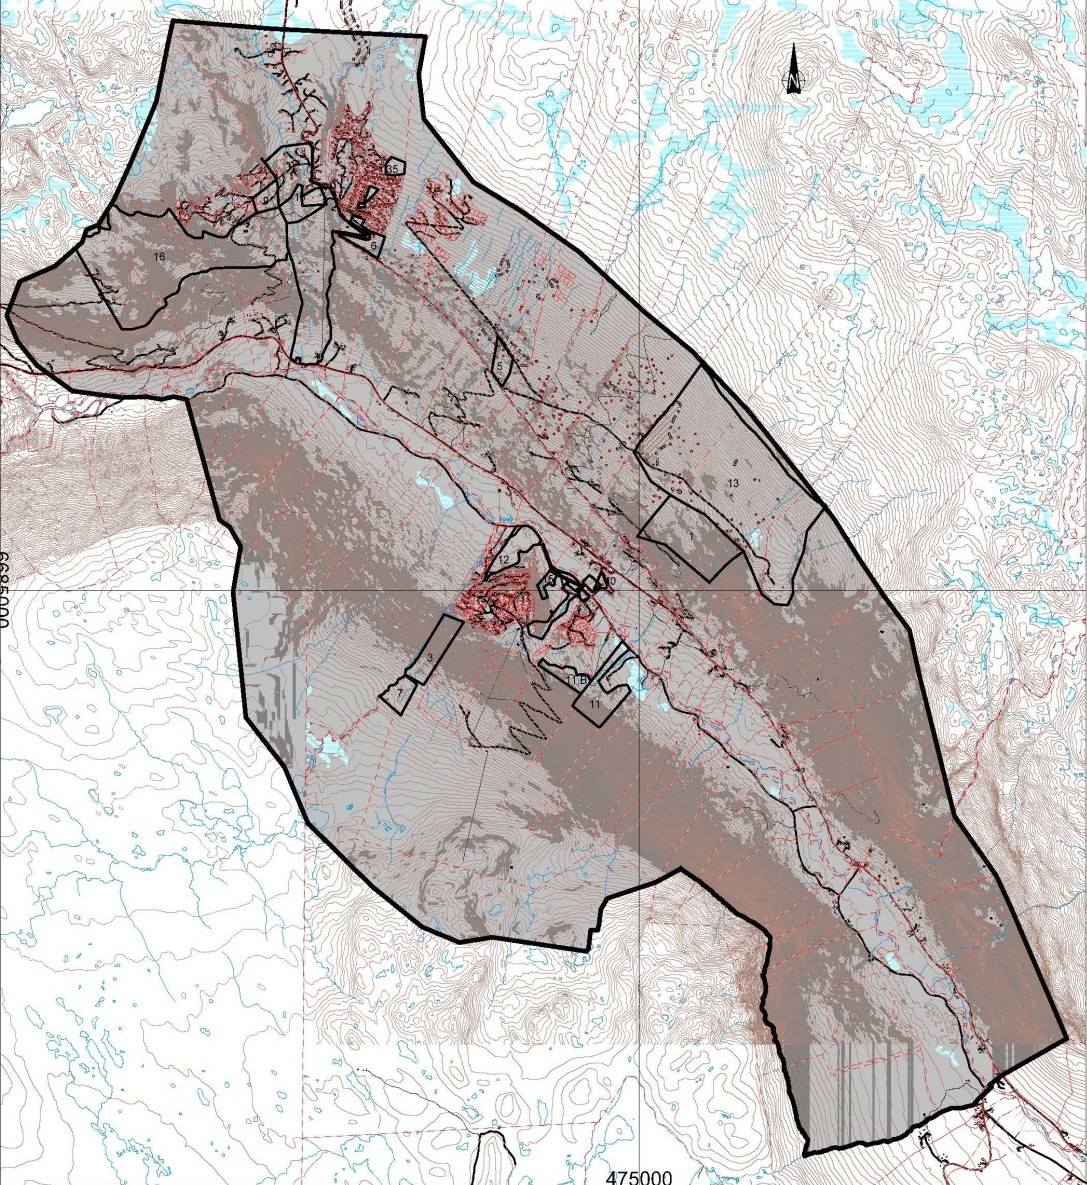 Fig 13: Kartet viser (grovt) områder som har helling brattere enn 1:3 vist med mørk grå farge. Områder med lys grå farge har helling slakere enn 1:3 4.